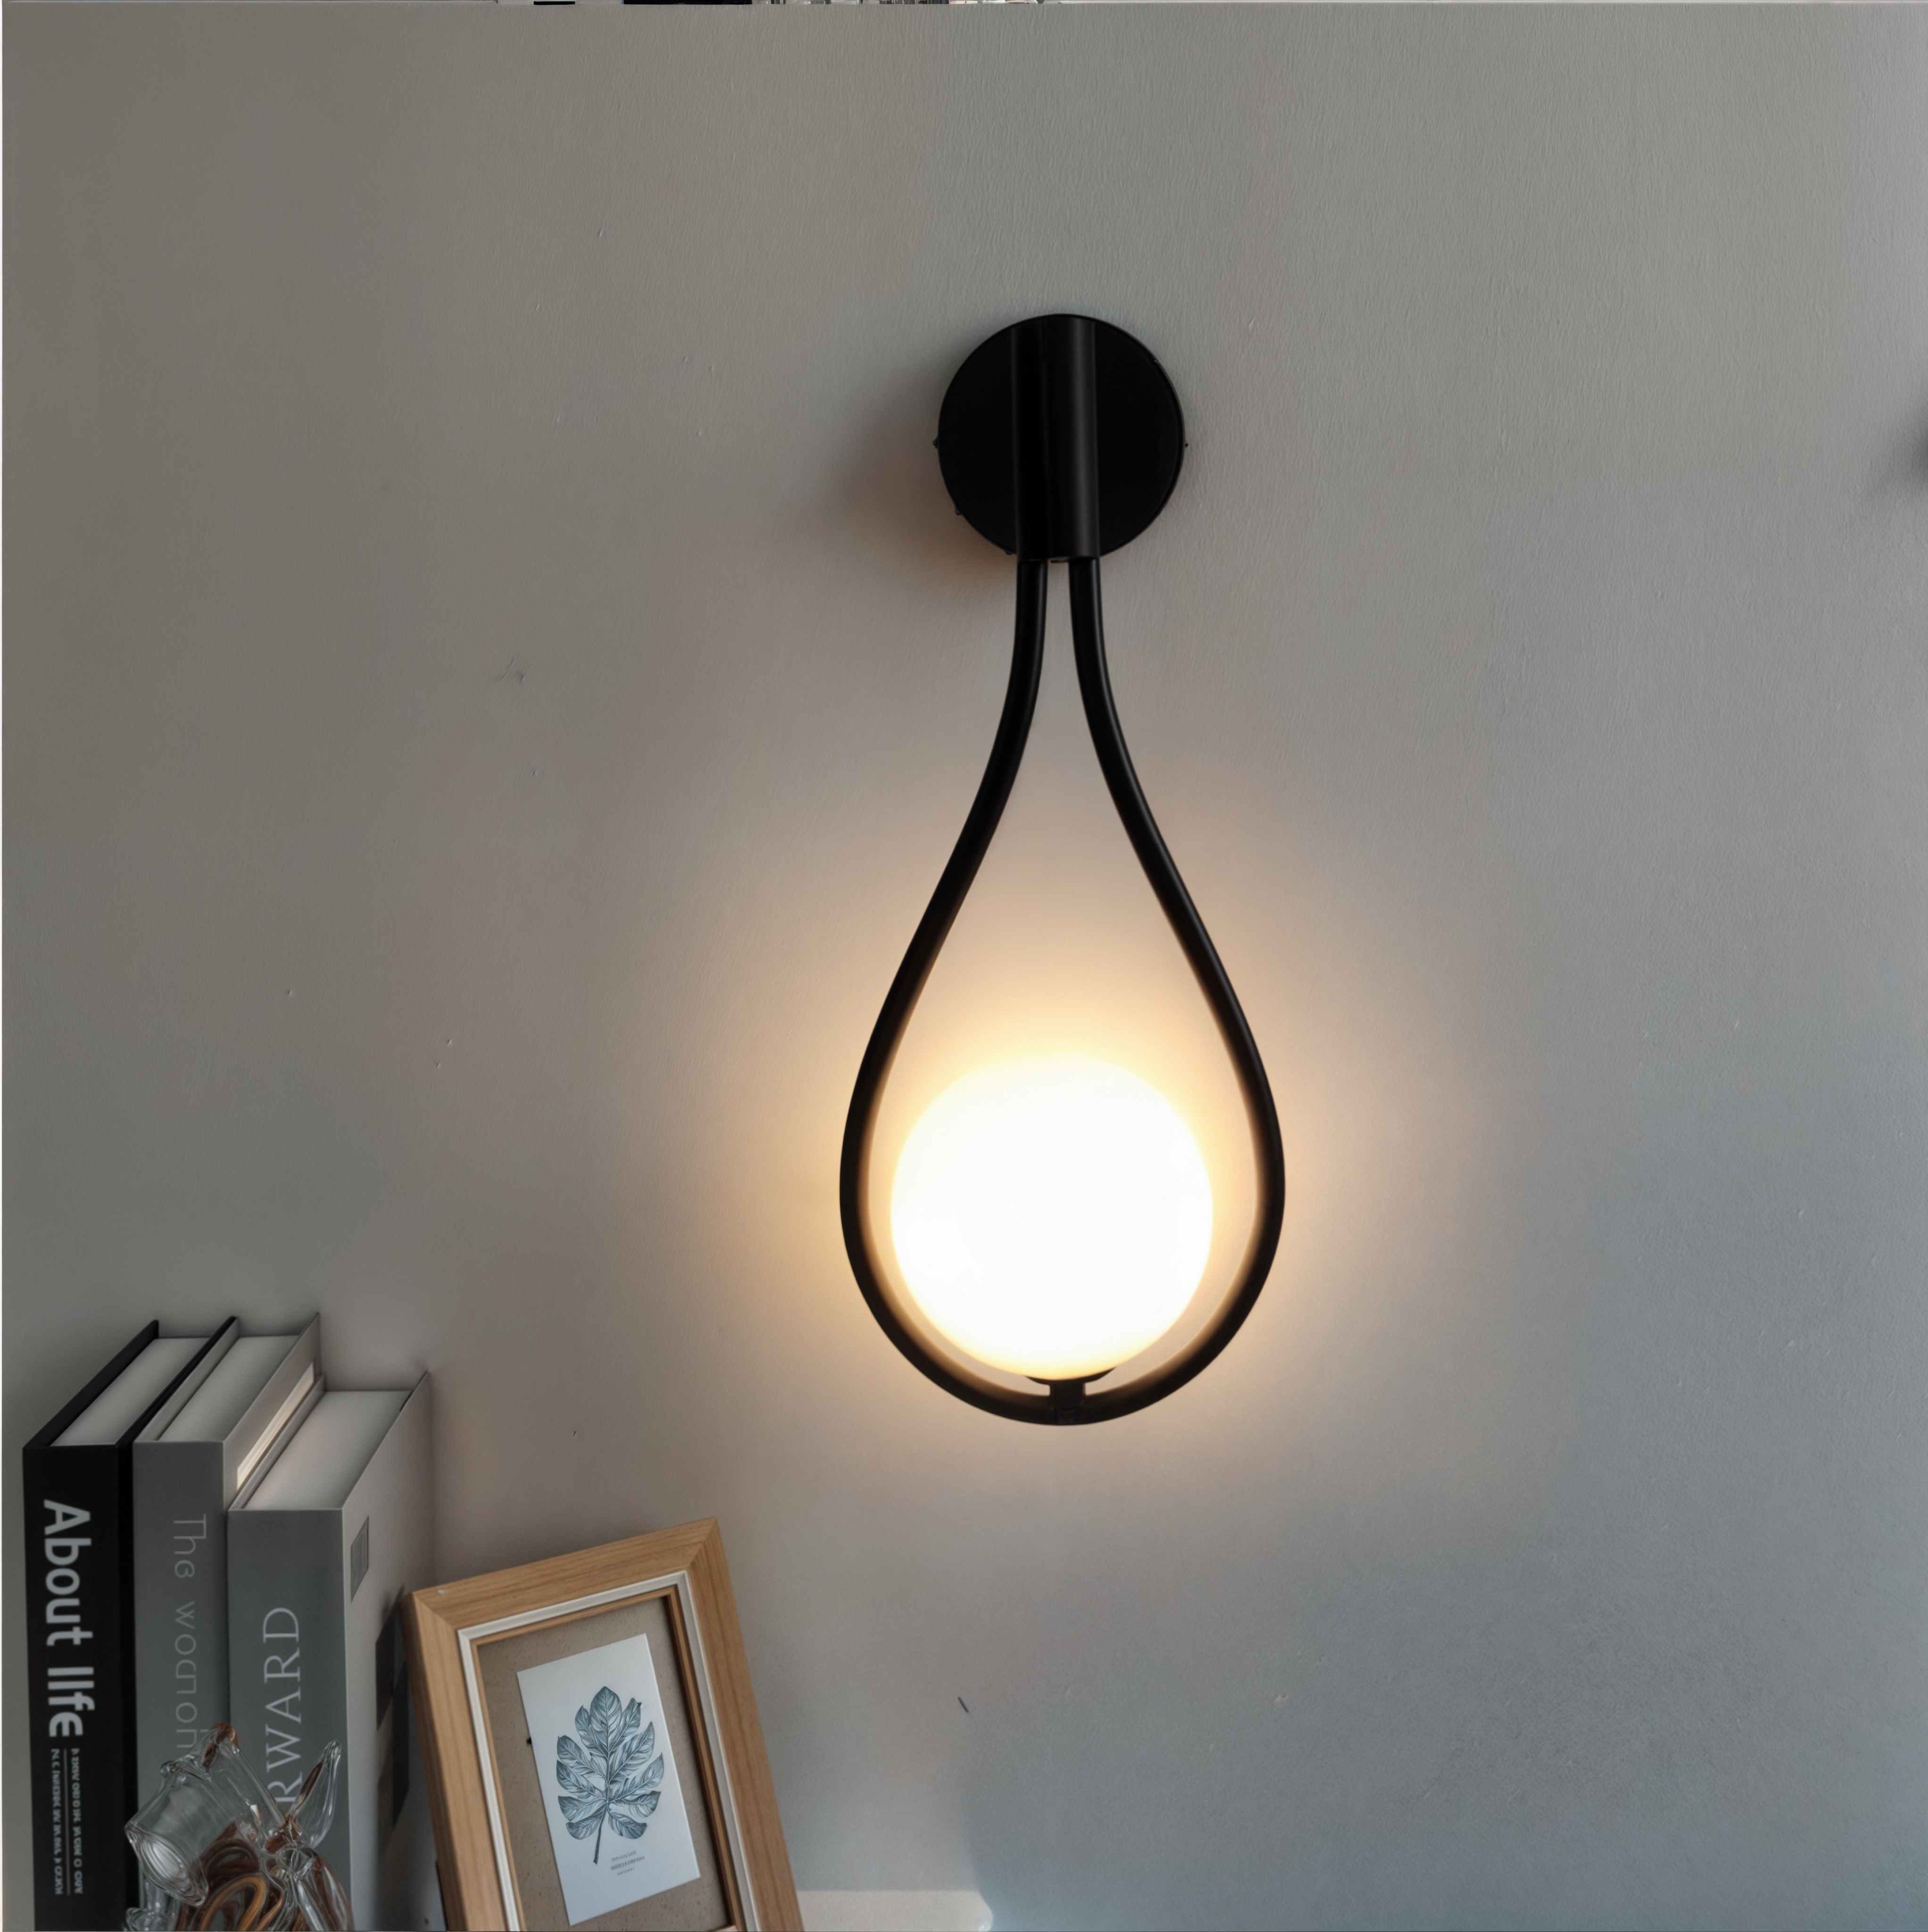 Moderne nordische Wandleuchte, schwarz/gold, G4 LED, Eisen+Glas, Milchglas, Up/Down-Beleuchtung, ideal für Küche, Esszimmer, Bad, CE, ROHS zertifiziert